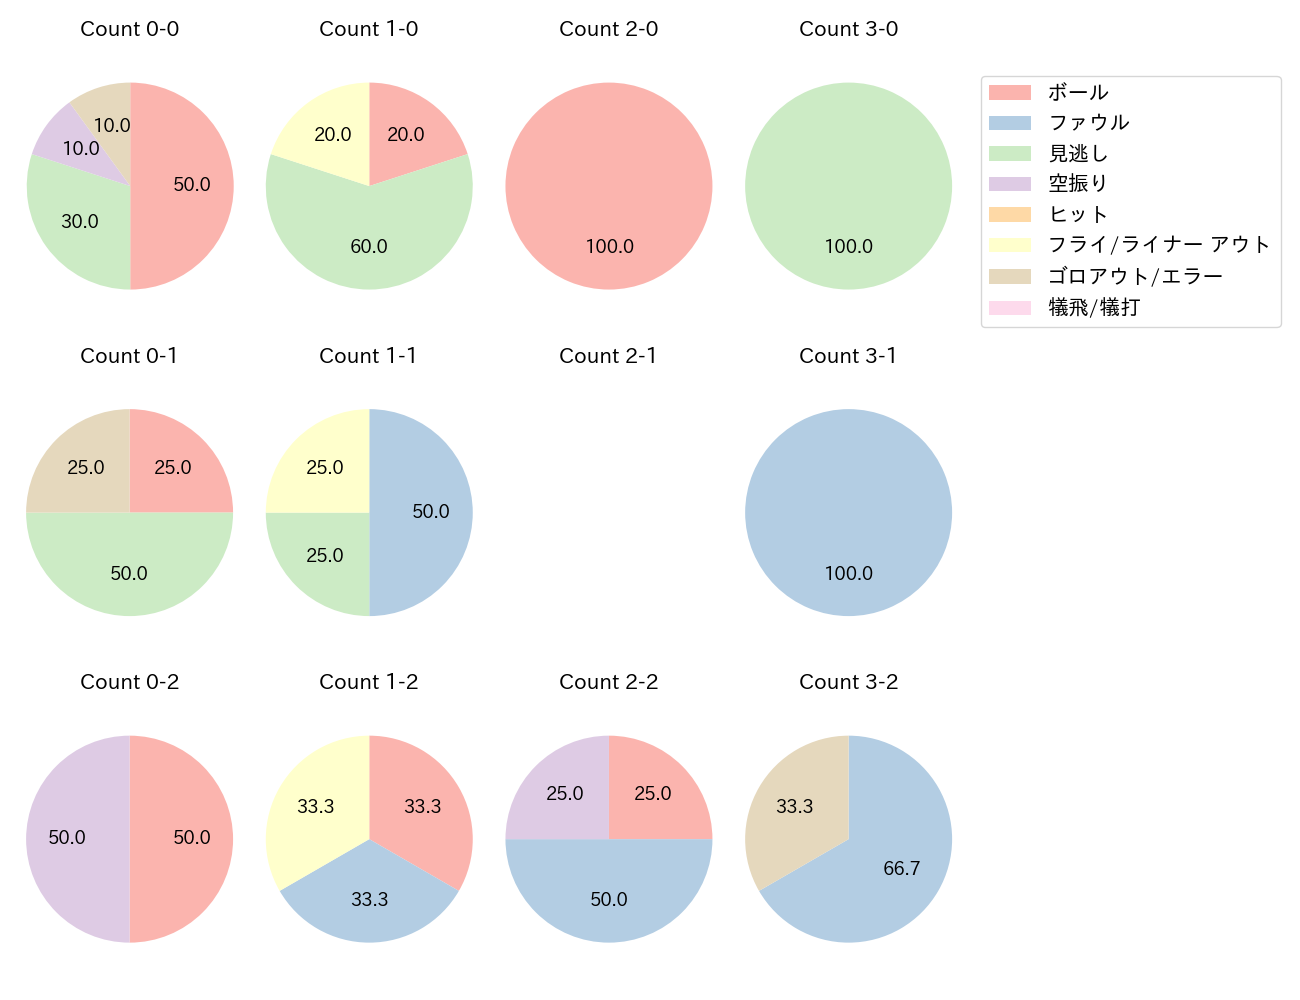 坂口 智隆の球数分布(2021年3月)